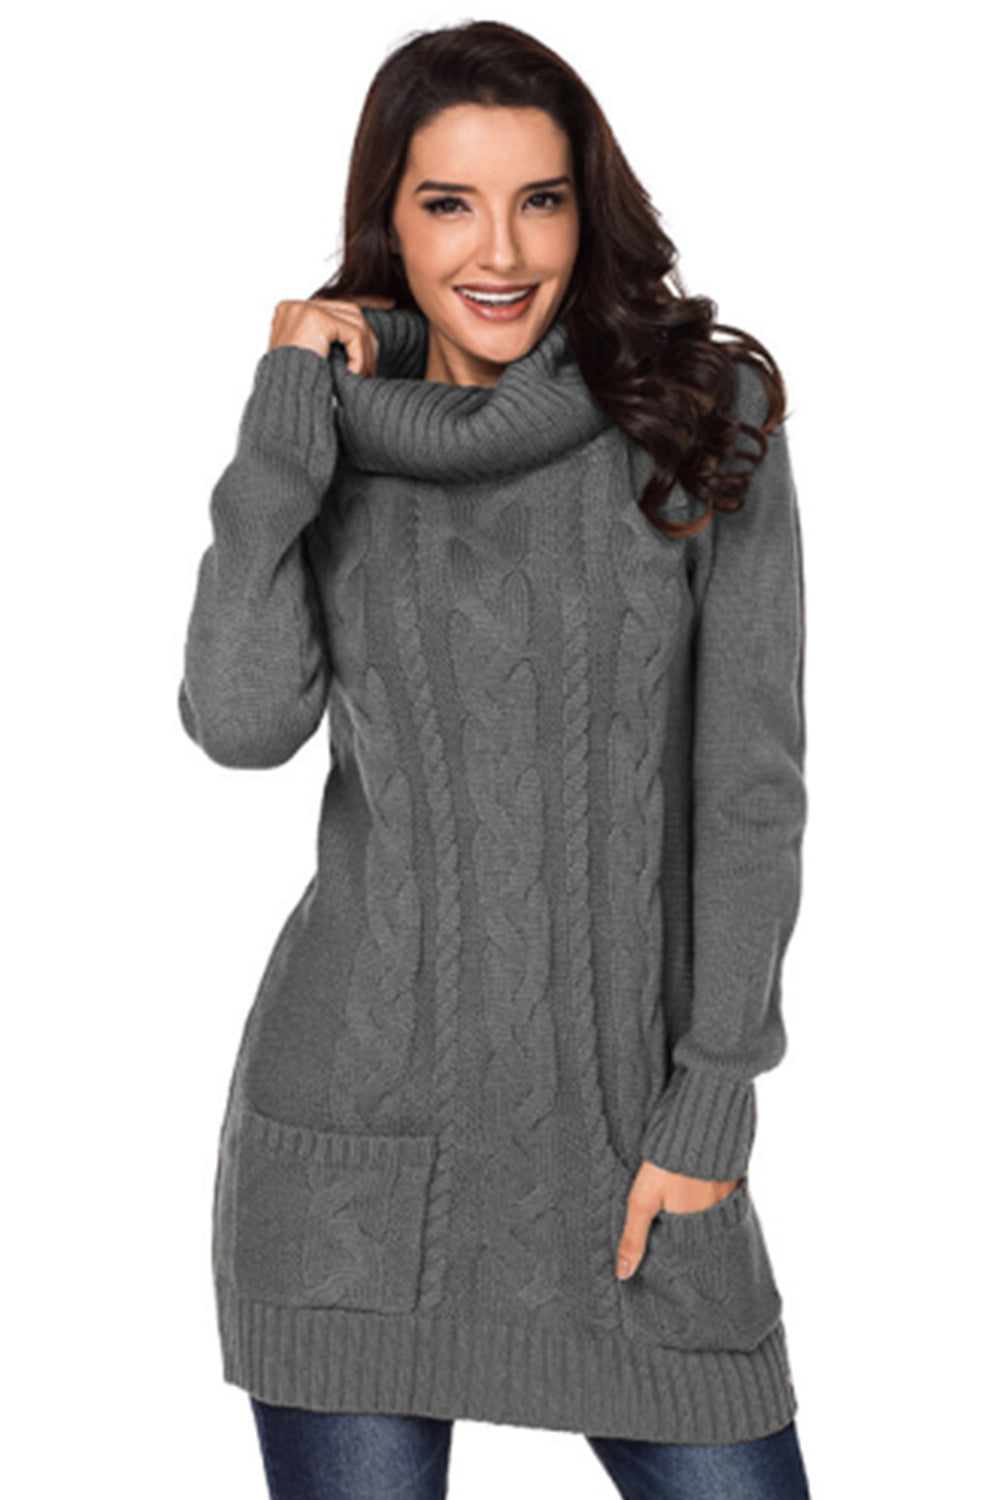 Women Turtleneck Long Sleeve Knit Pullover Sweaters Dress